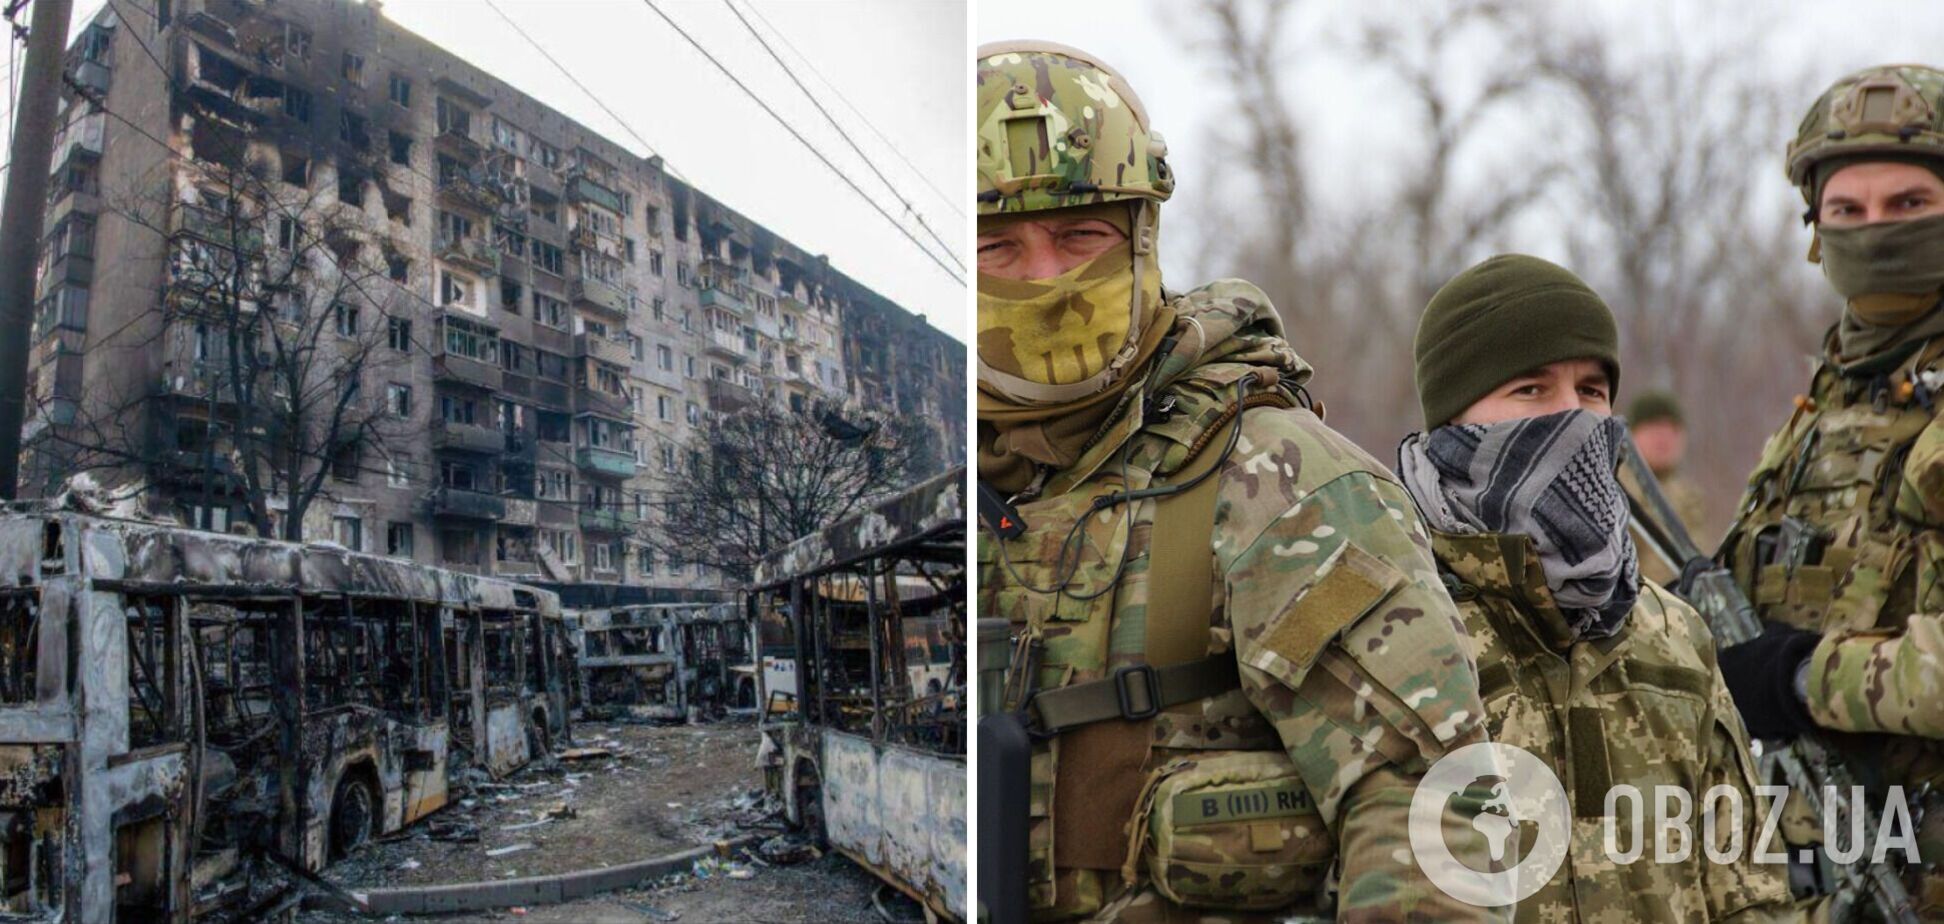 Защитники Мариуполя: мы верим в военно-политическое руководство Украины и продолжаем борьбу. Видео